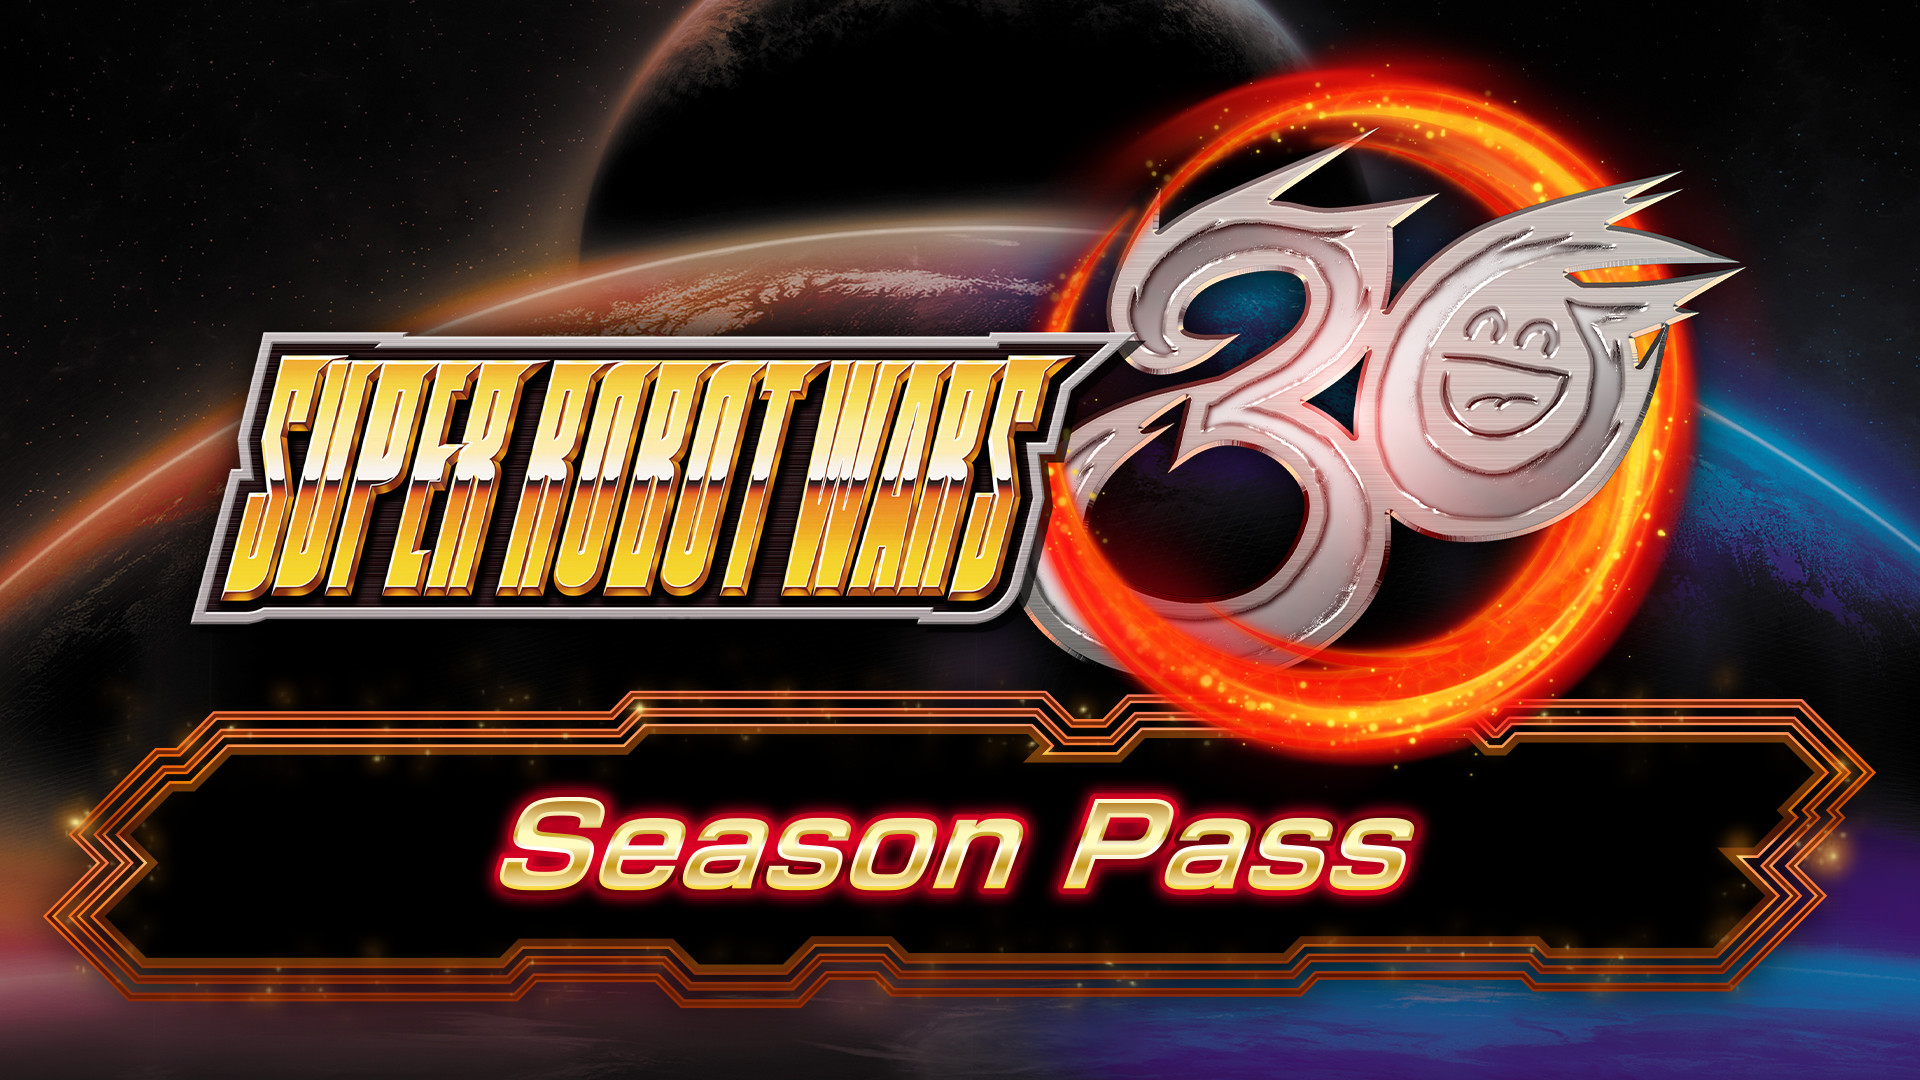 Super Robot Wars 30 - Season Pass Steam CD Key 13.54 $